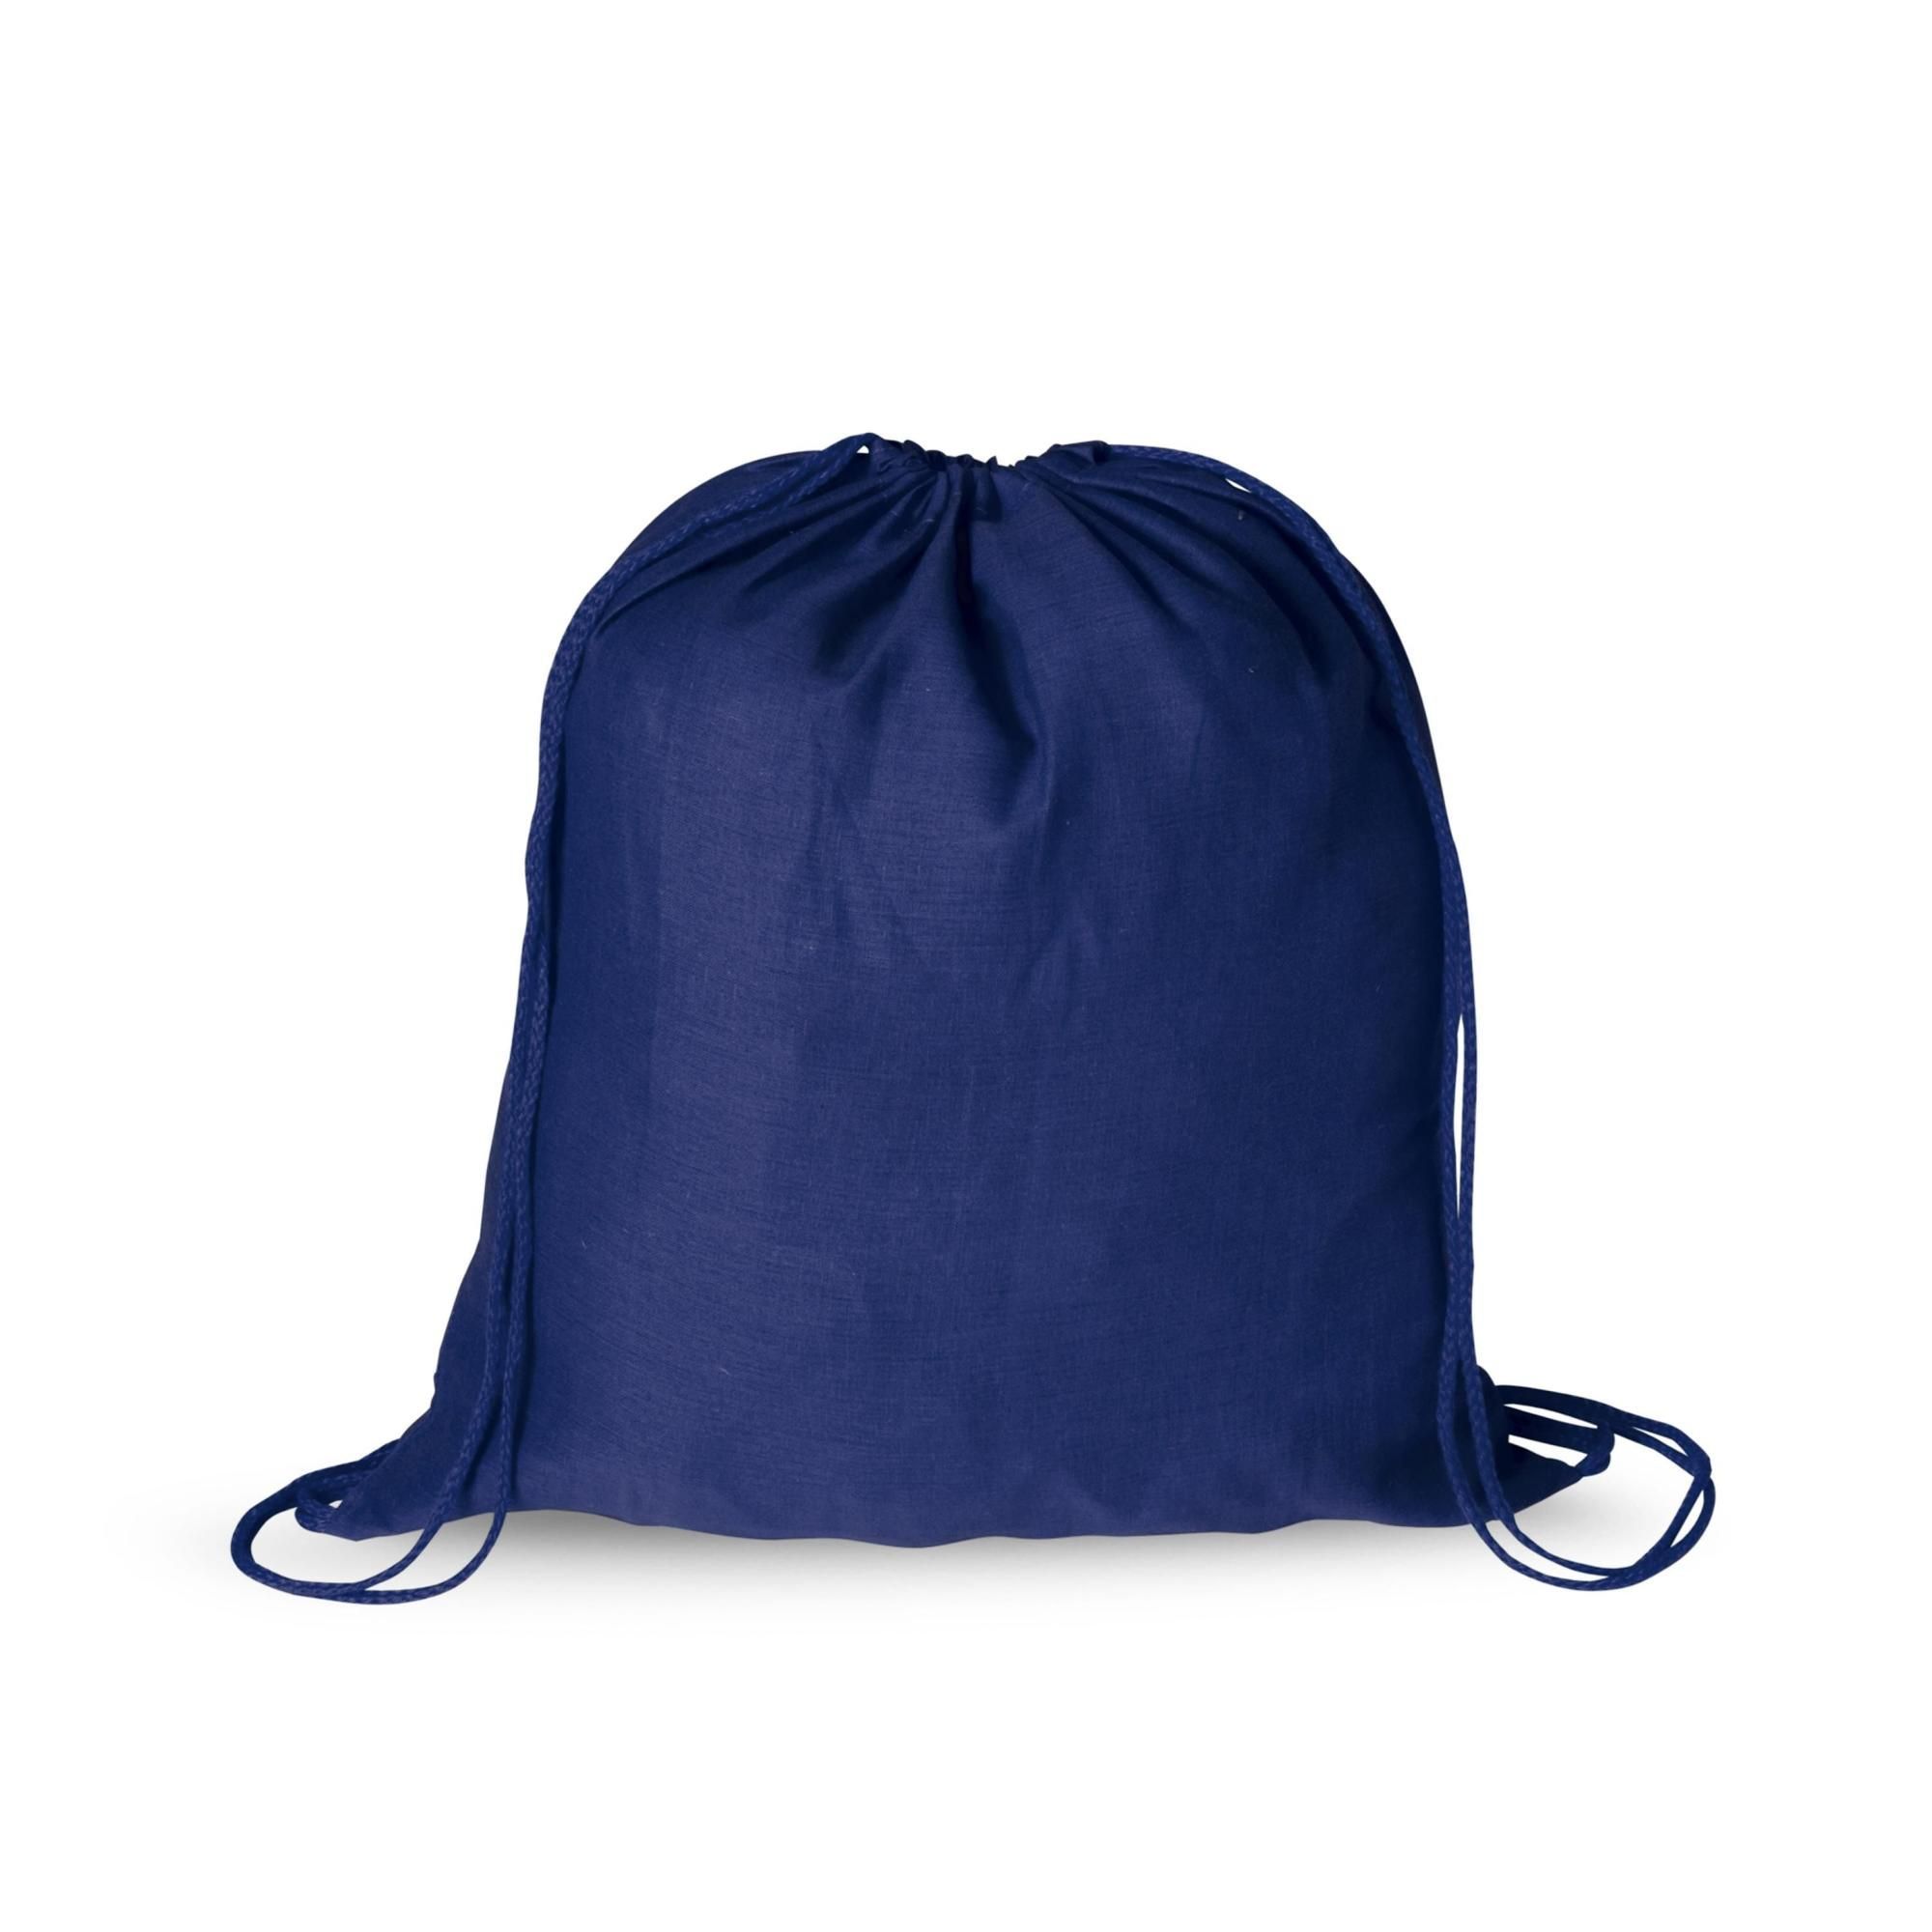 Mochila saco con cuerdas mochila saco azul